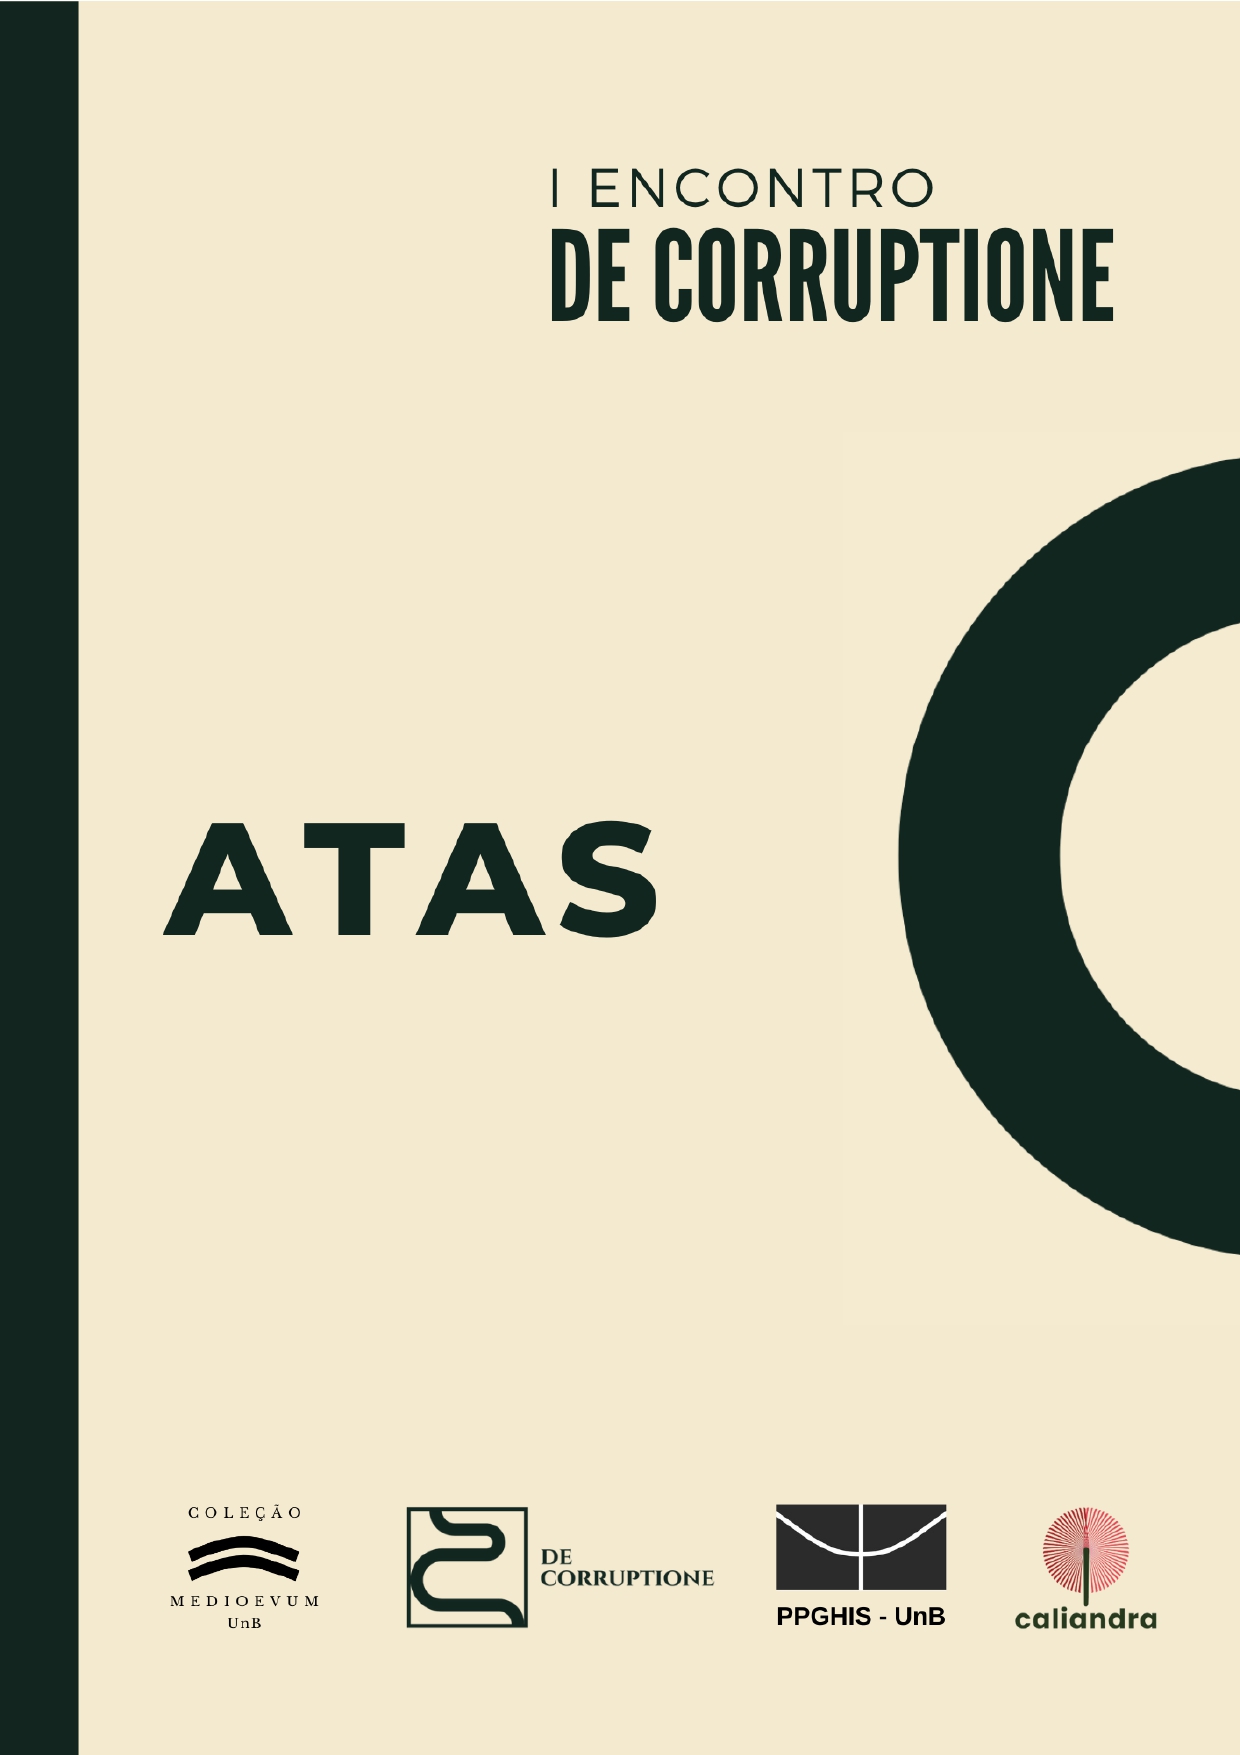 Atas_I_ENCONTRO_DE_CORRUPTIONE.jpg